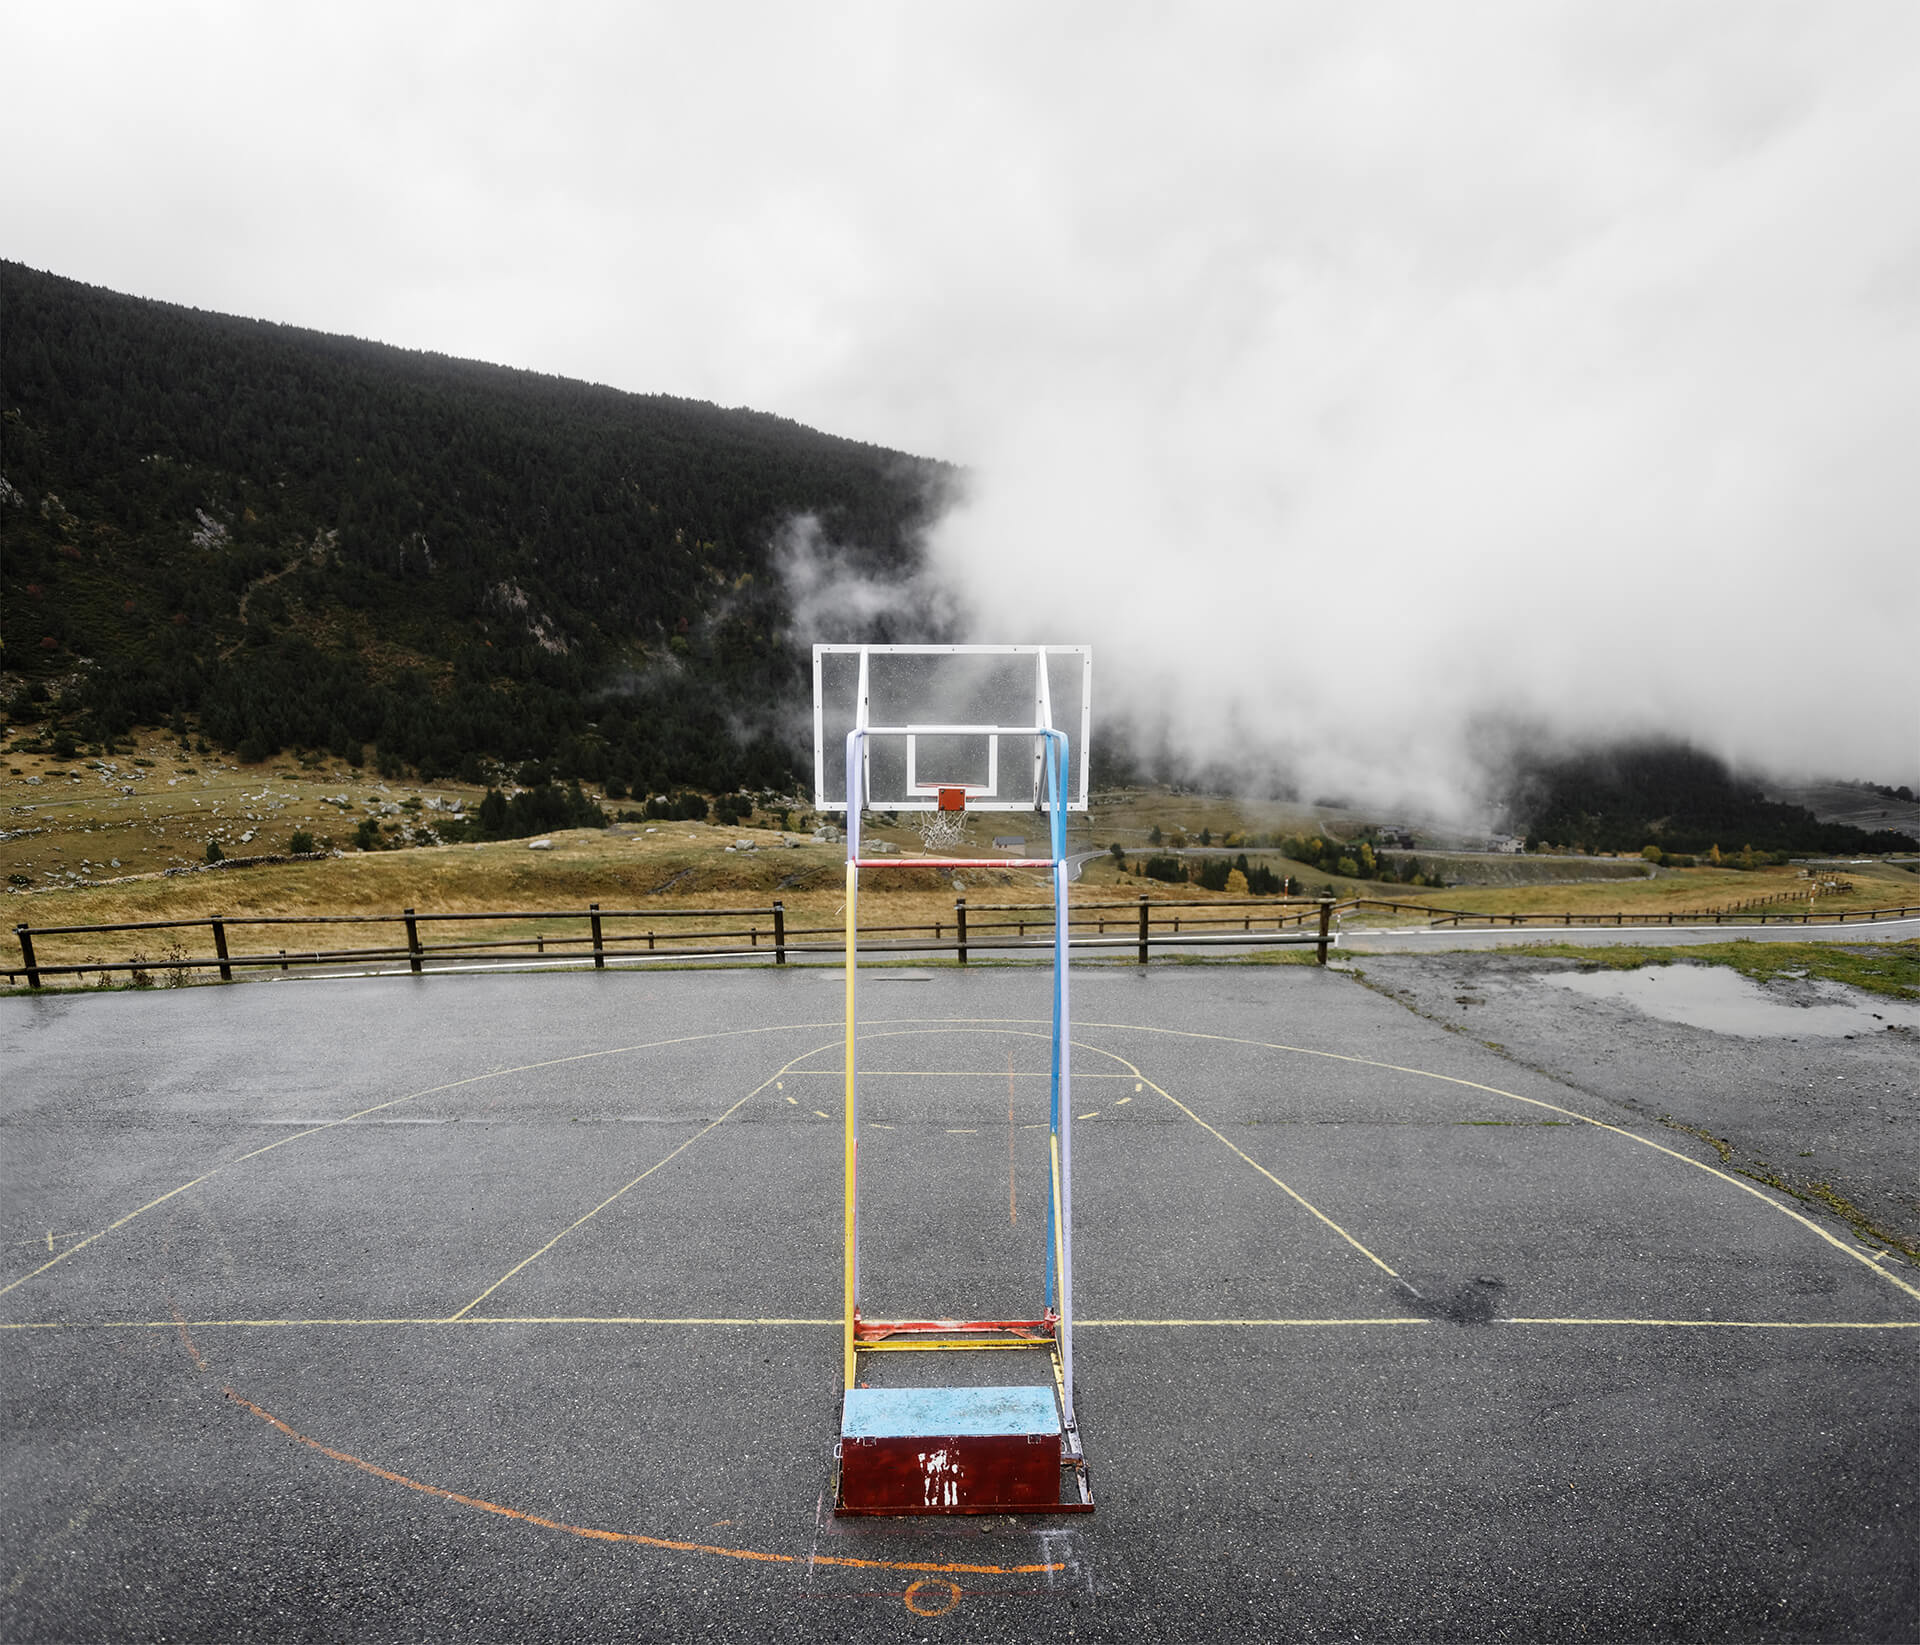 Terrain de basket à El Tarter en Andorre, ville frontalière entre l'Espagne et la France.